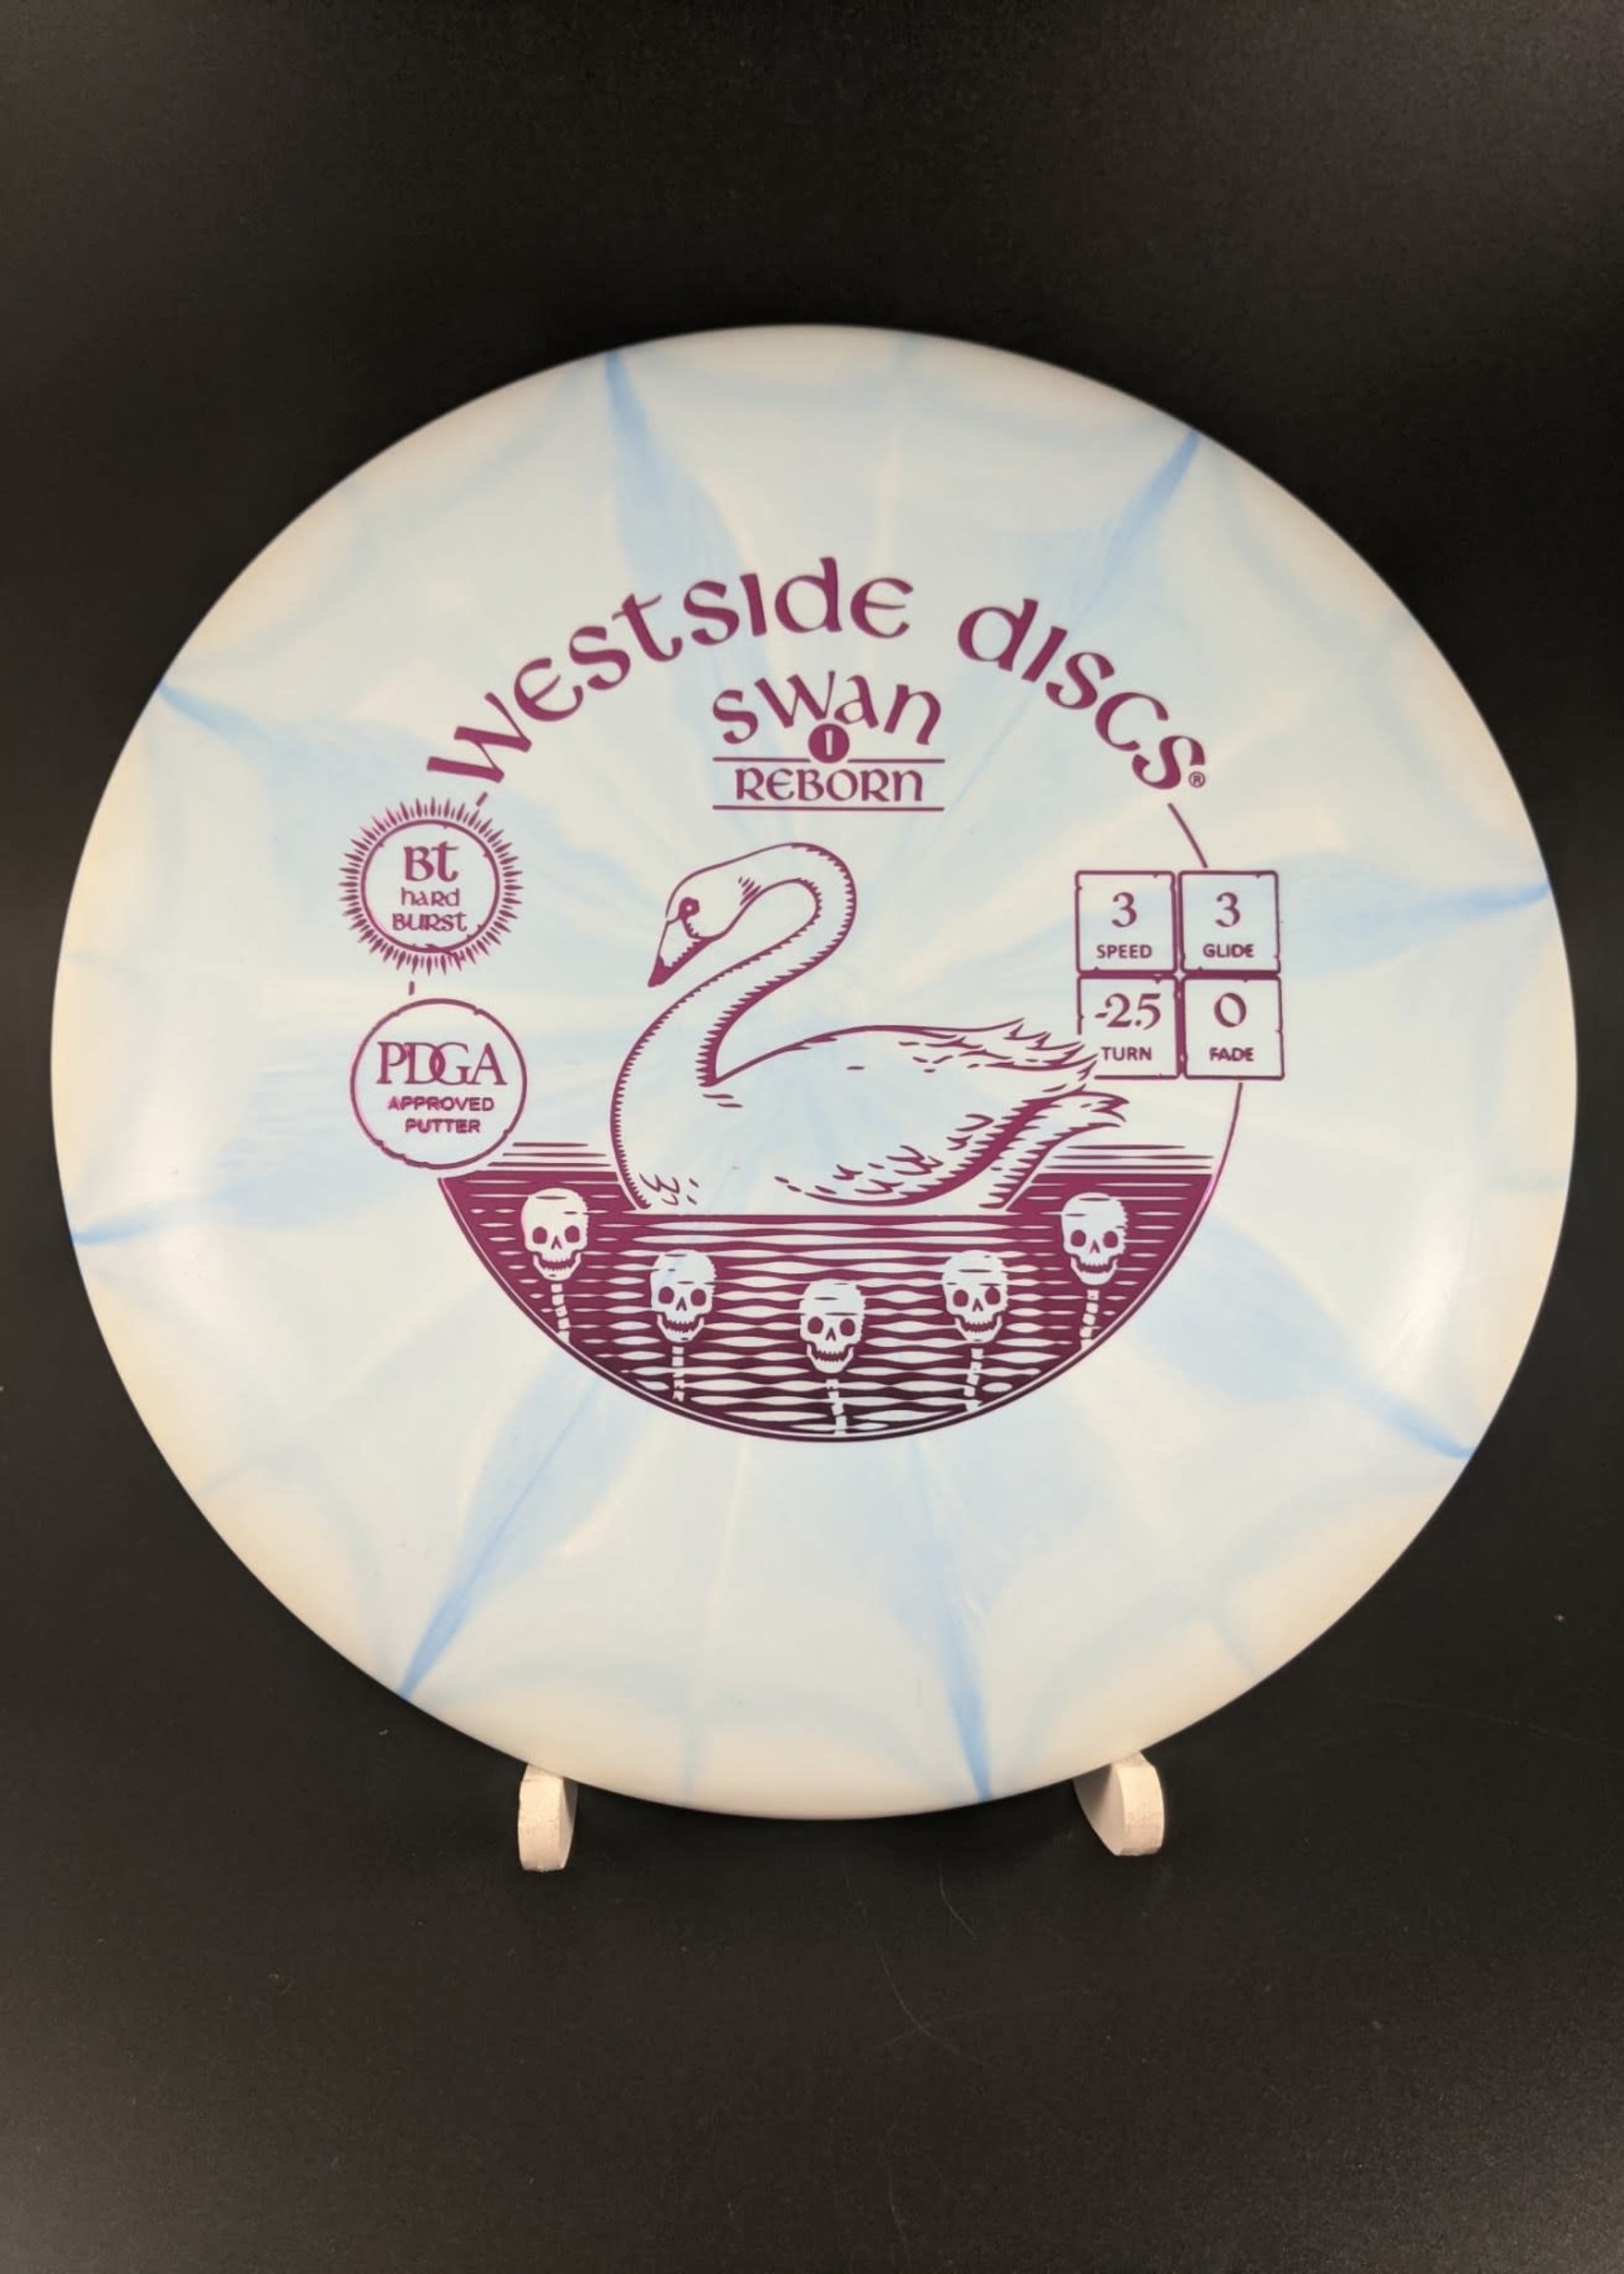 Westside Disc Westside BT Hard Burst Swan 1 Reborn